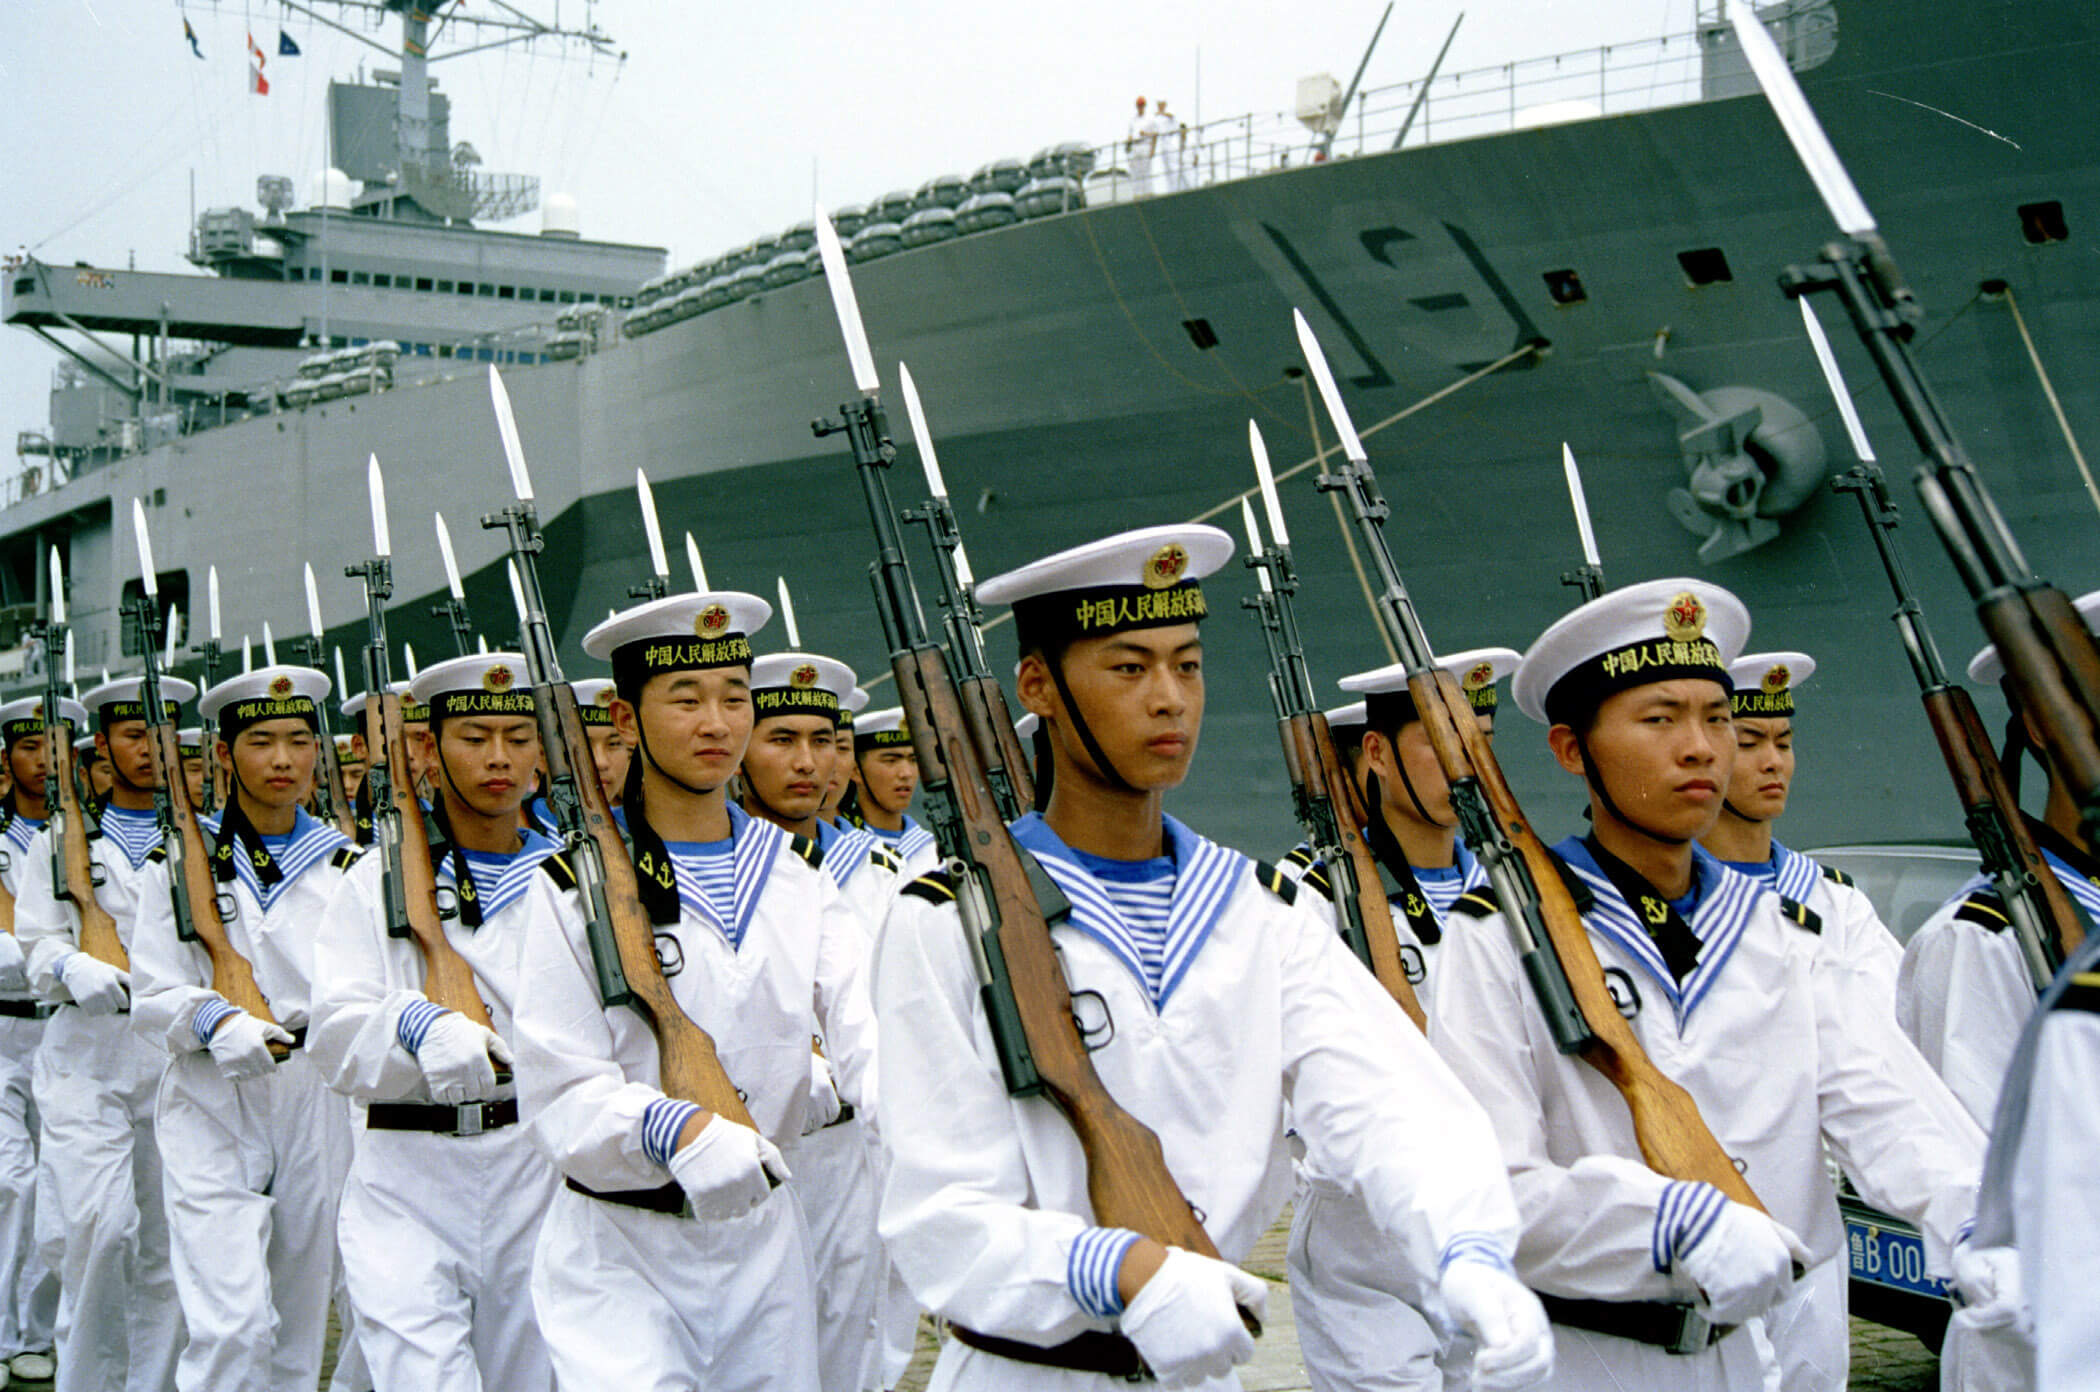 Chinese mariniers op bezoek bij een Amerikaanse delegatie in Japan in 2000. ©Wikicommons